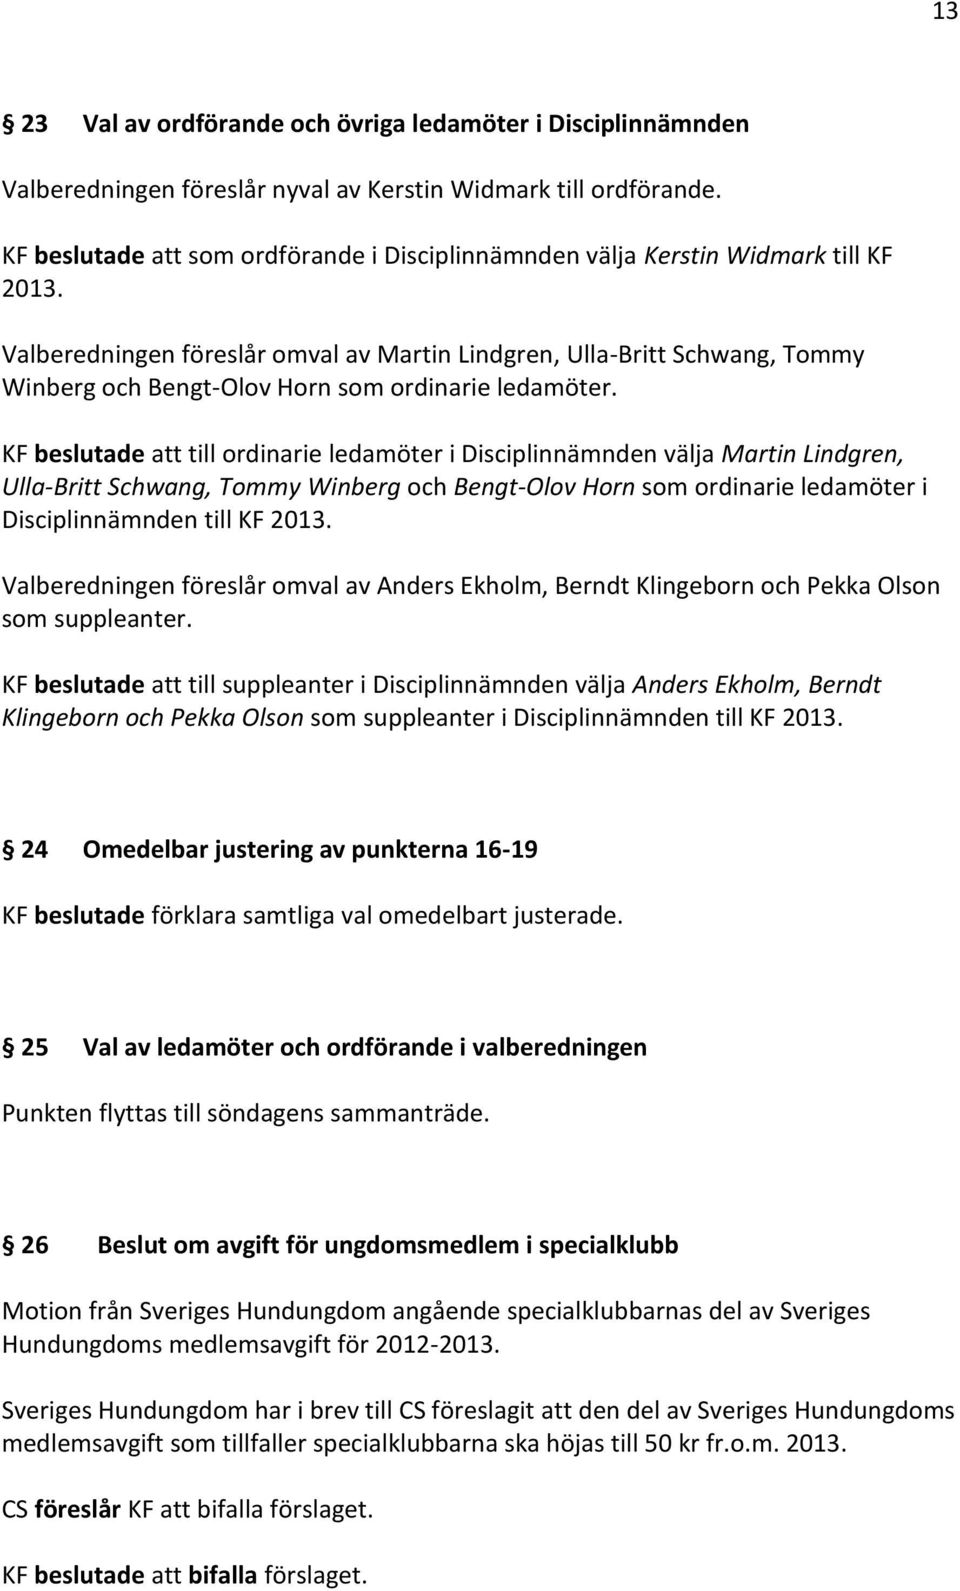 Valberedningen föreslår omval av Martin Lindgren, Ulla-Britt Schwang, Tommy Winberg och Bengt-Olov Horn som ordinarie ledamöter.